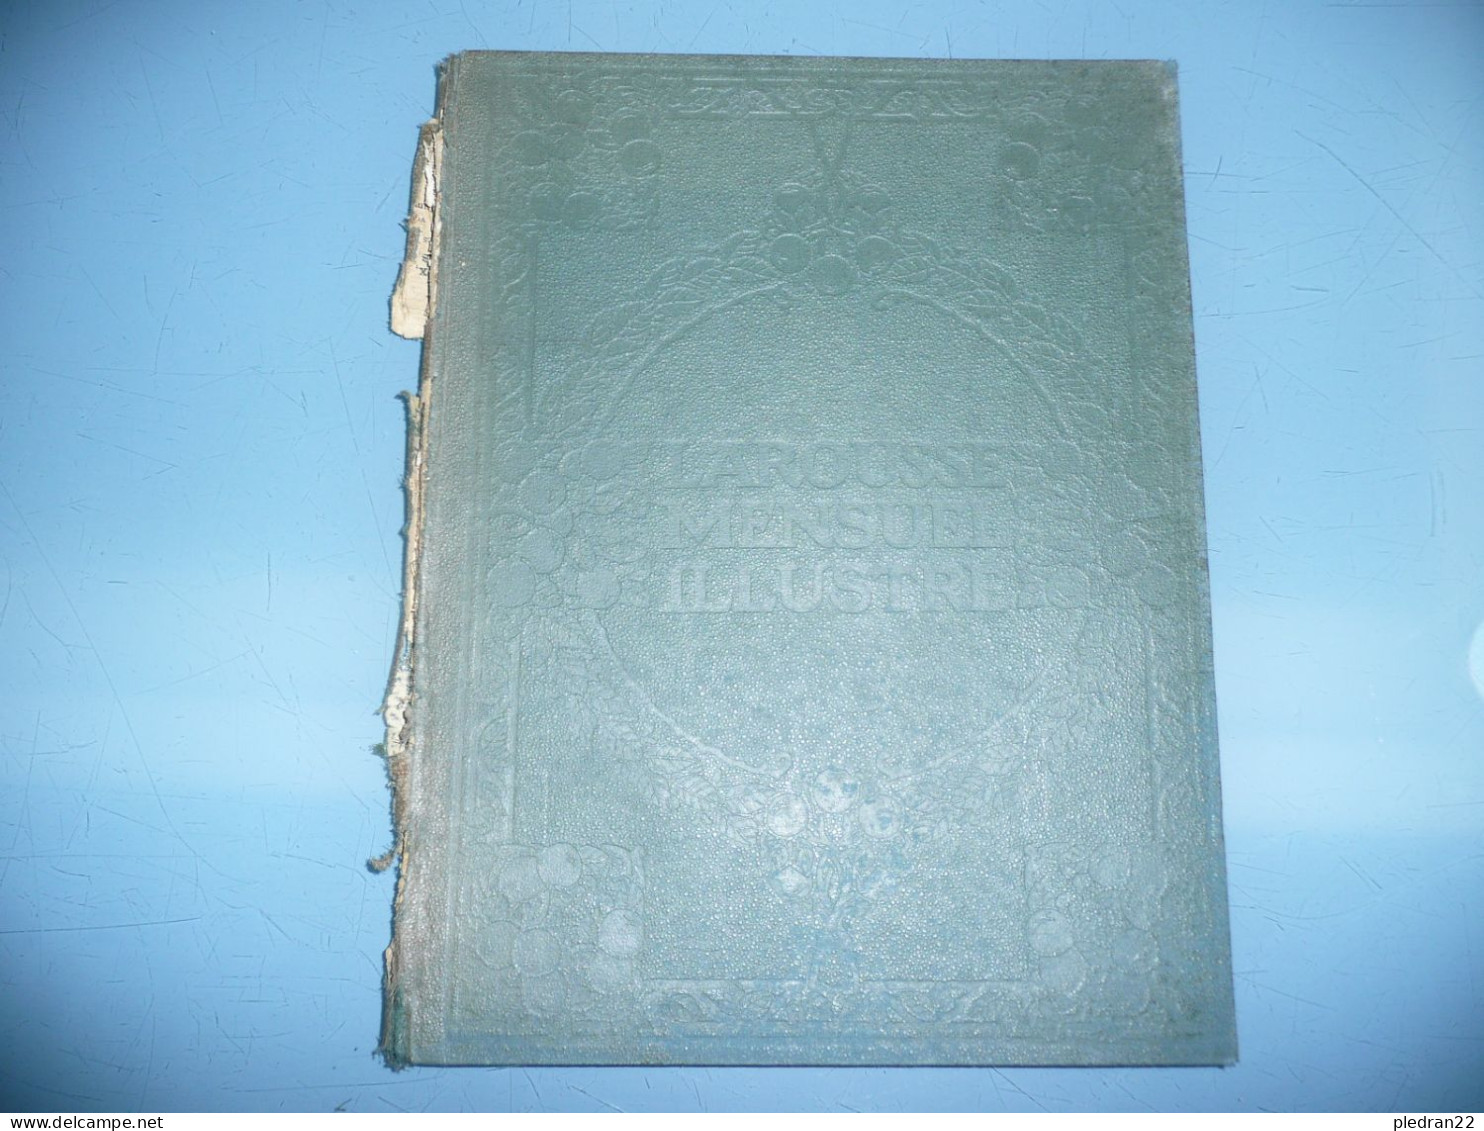 CLAUDE AUGE LAROUSSE MENSUEL ILLUSTRE REVUE ENCYCLOPEDIQUE UNIVERSELLE TABLE GENERALE 1907 1922 - Encyclopédies